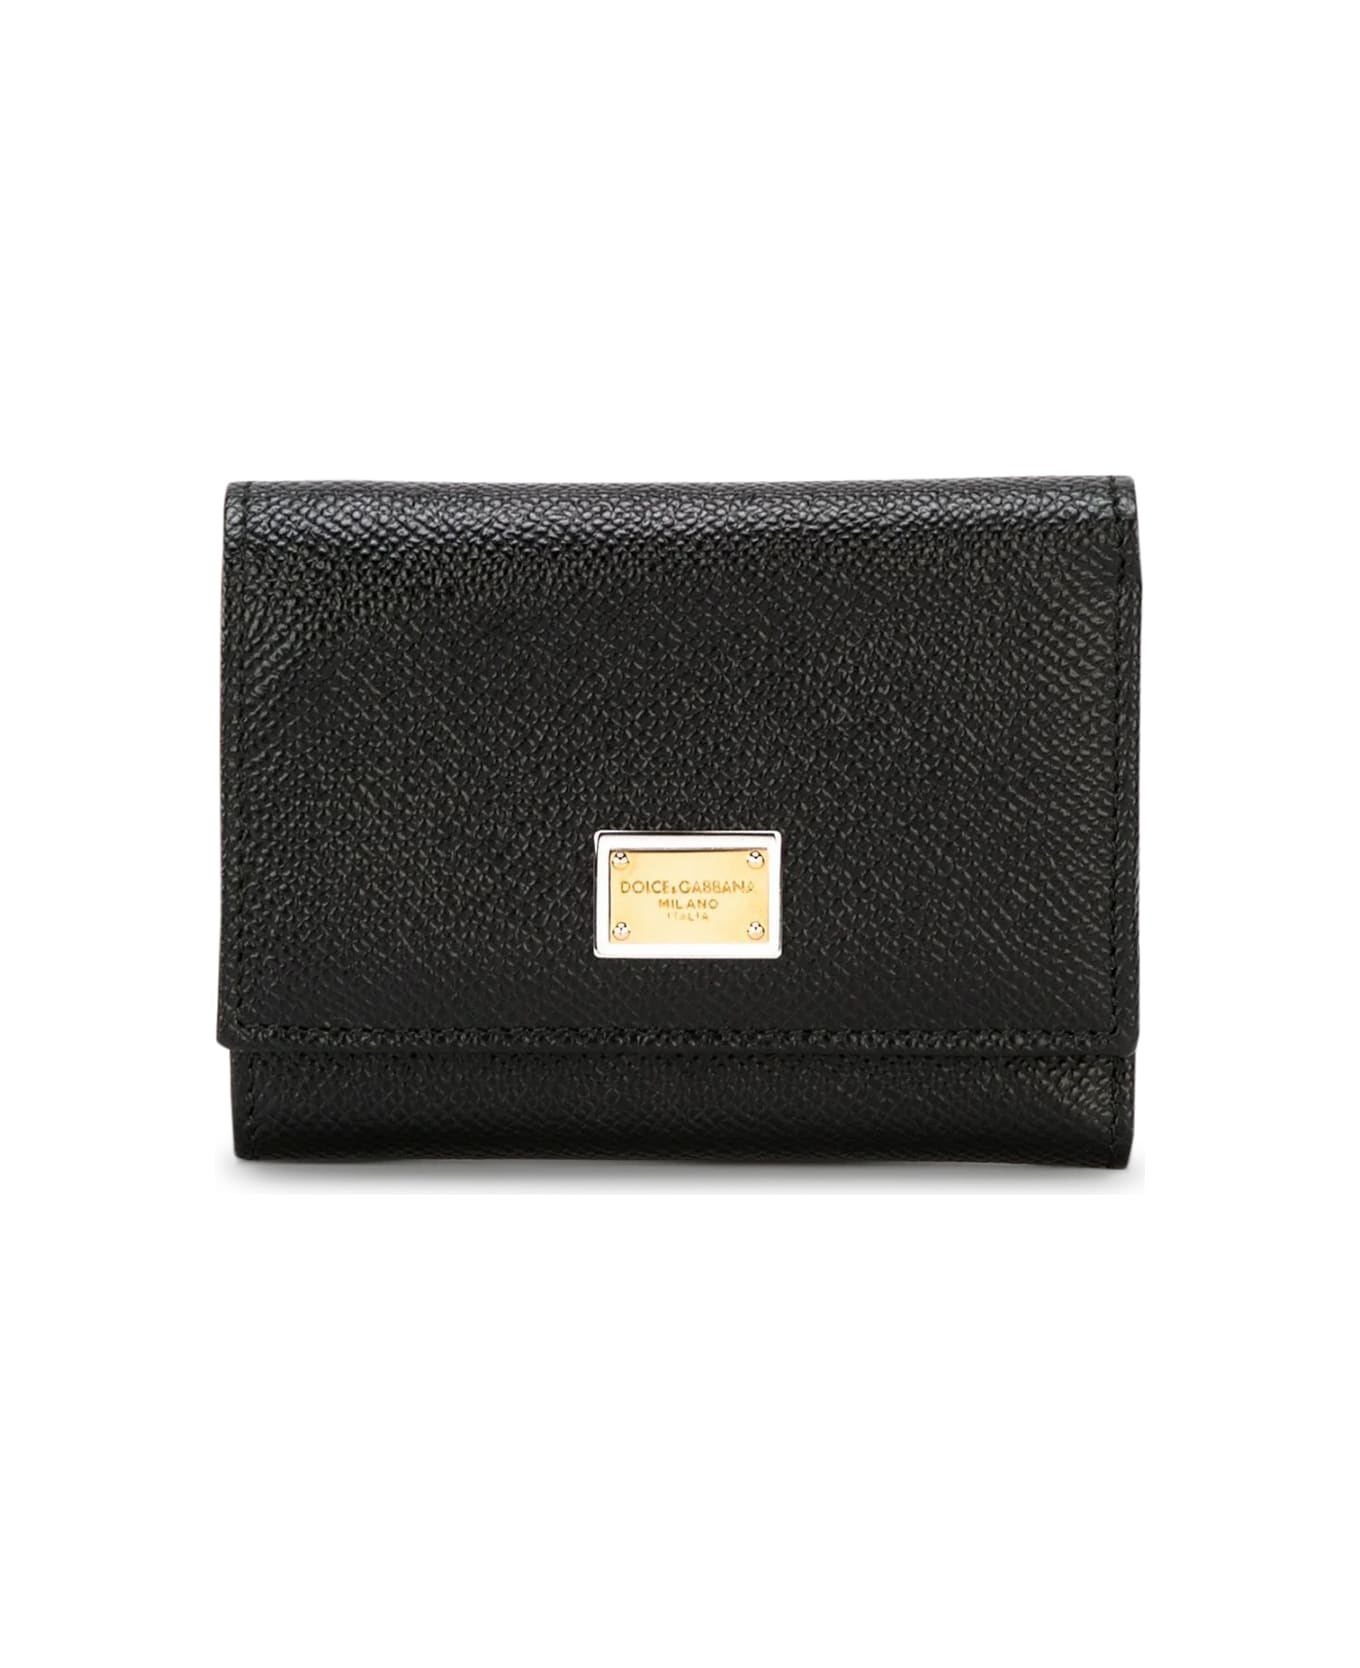 Dolce & Gabbana Dauphine Wallet - Black